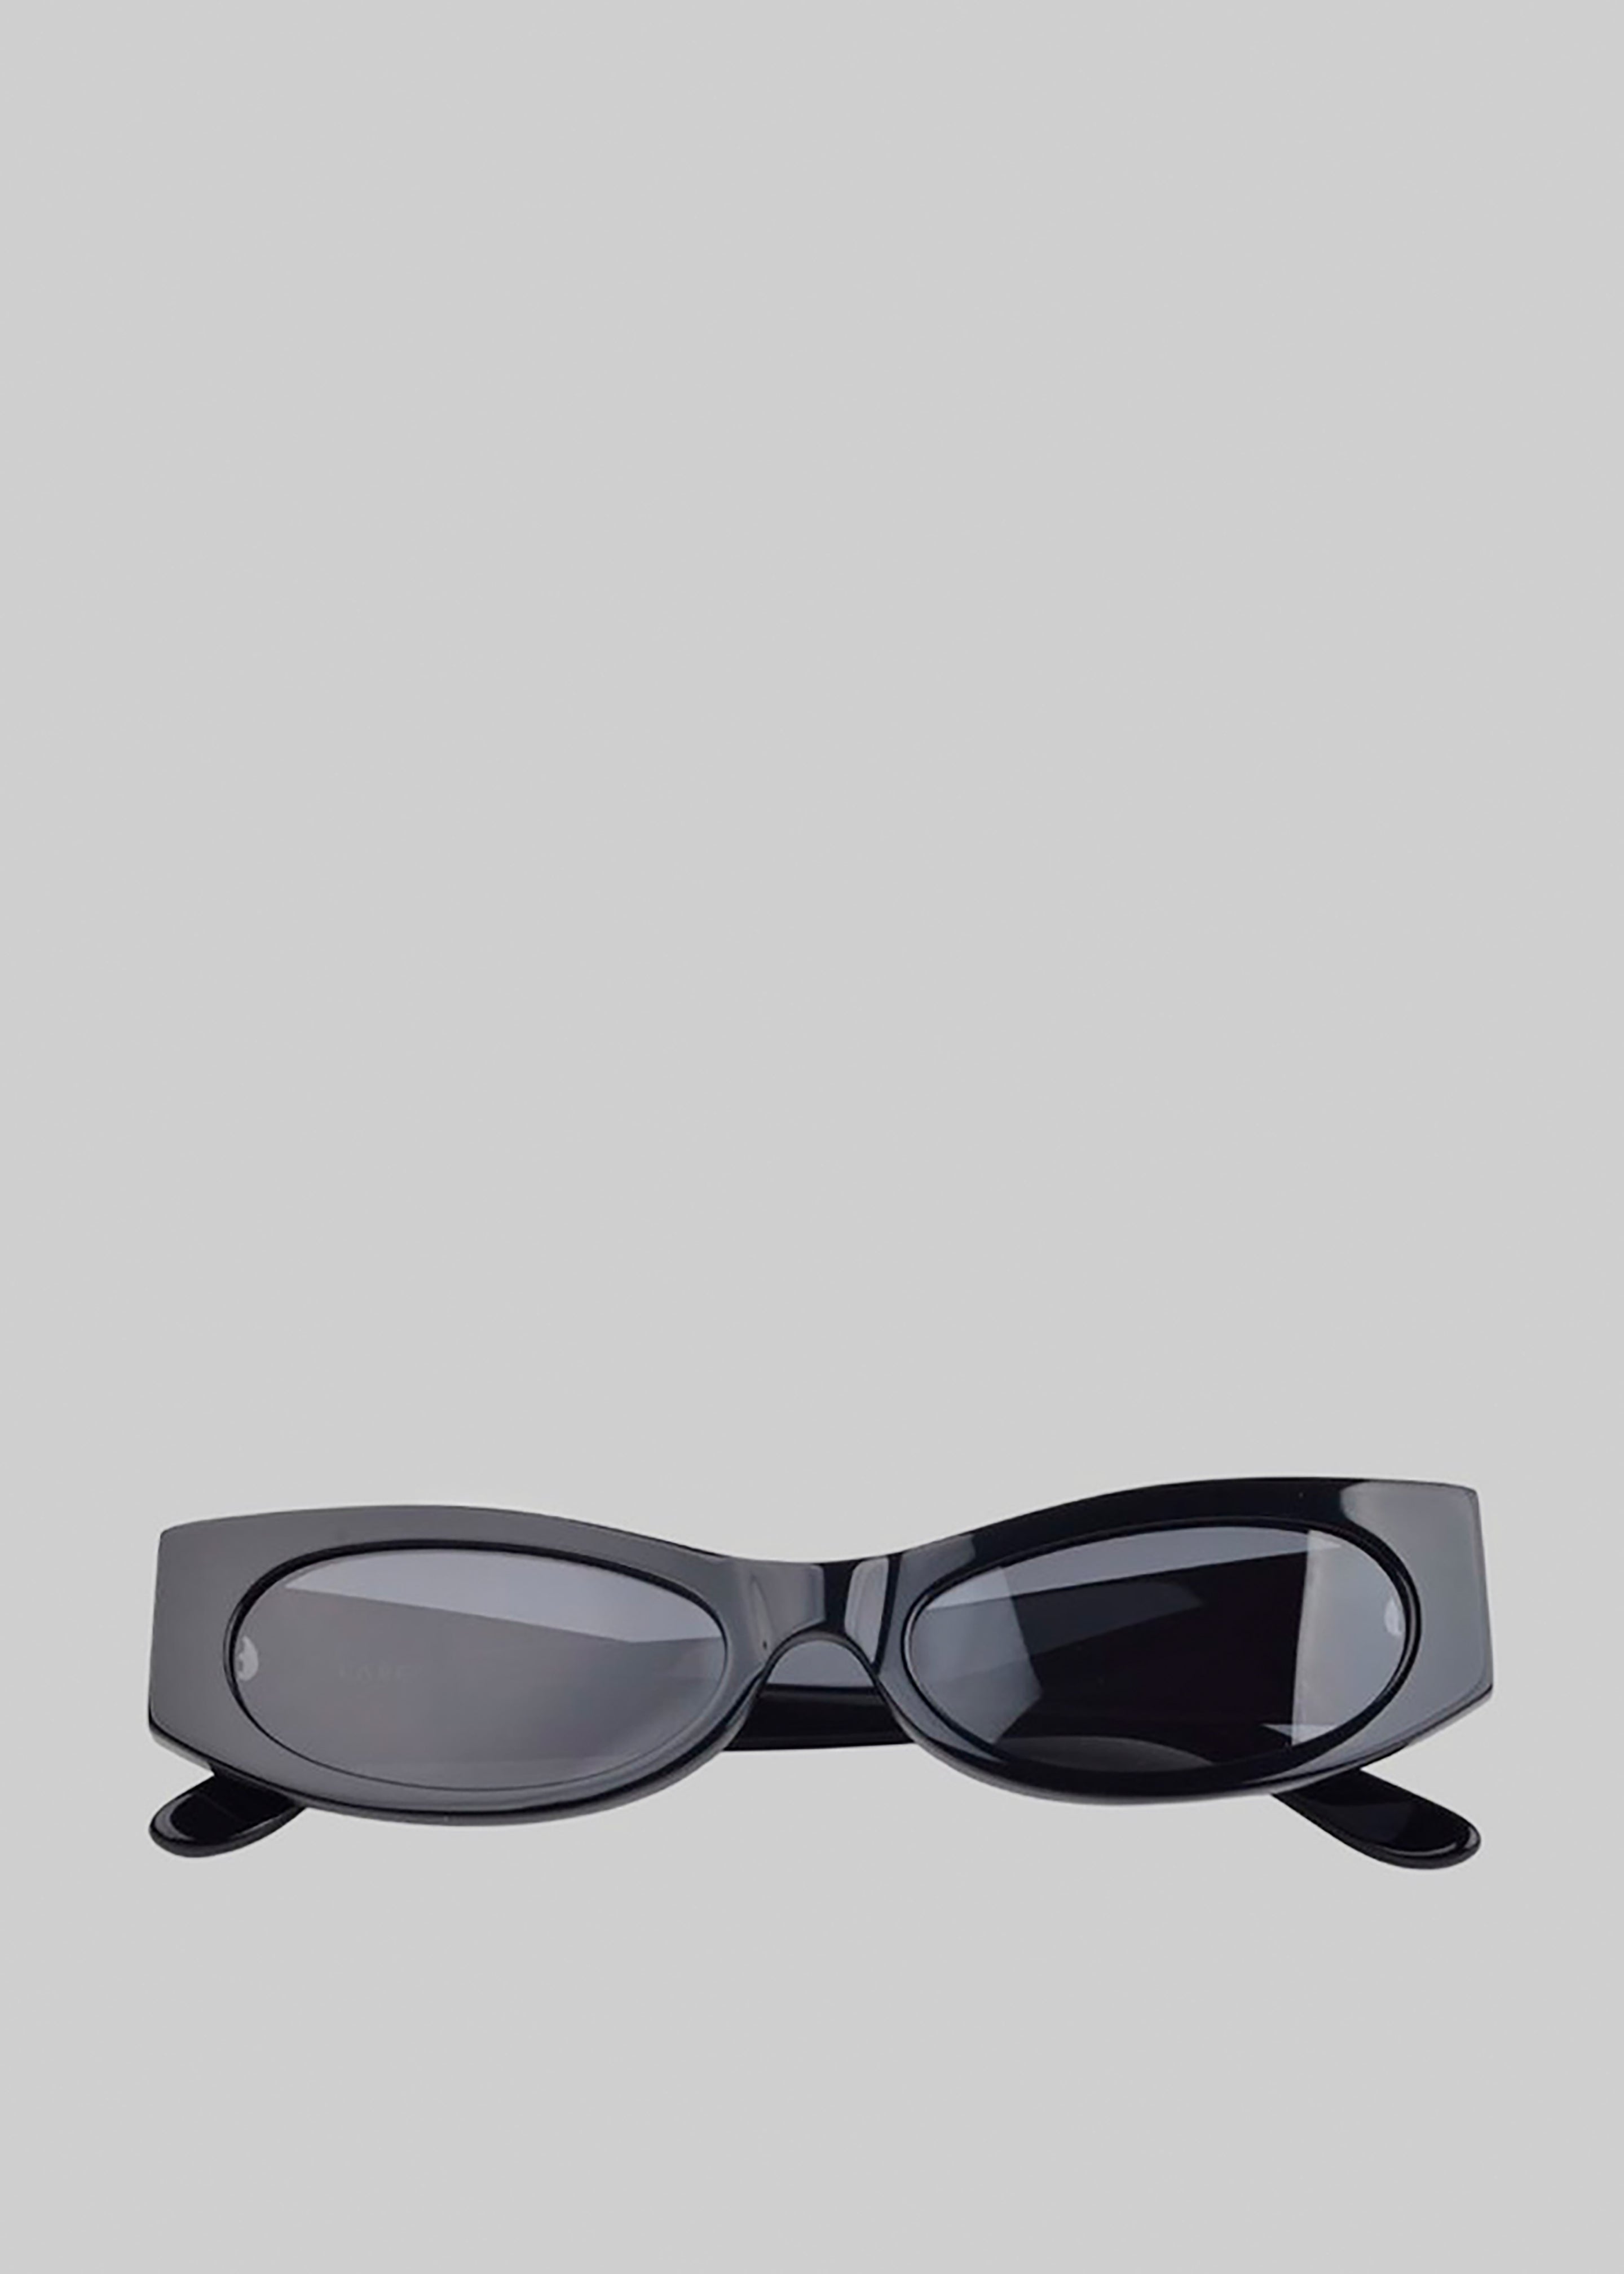 Karen Wazen Ciara Sunglasses - Black - 4